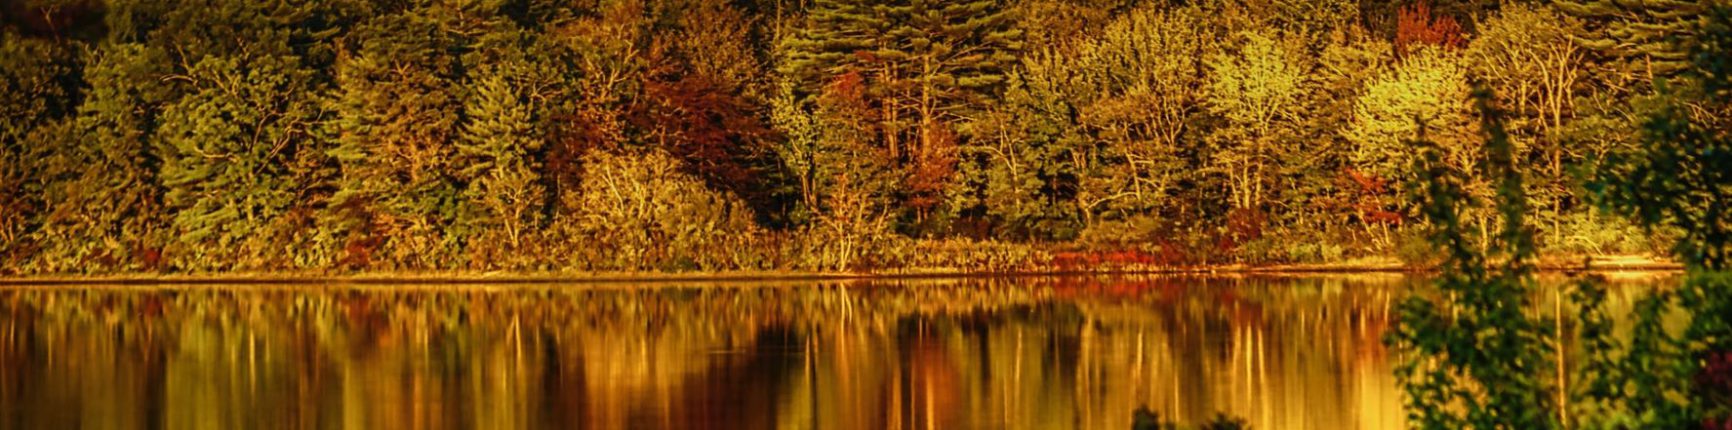 Massachusetts pond in autumn.